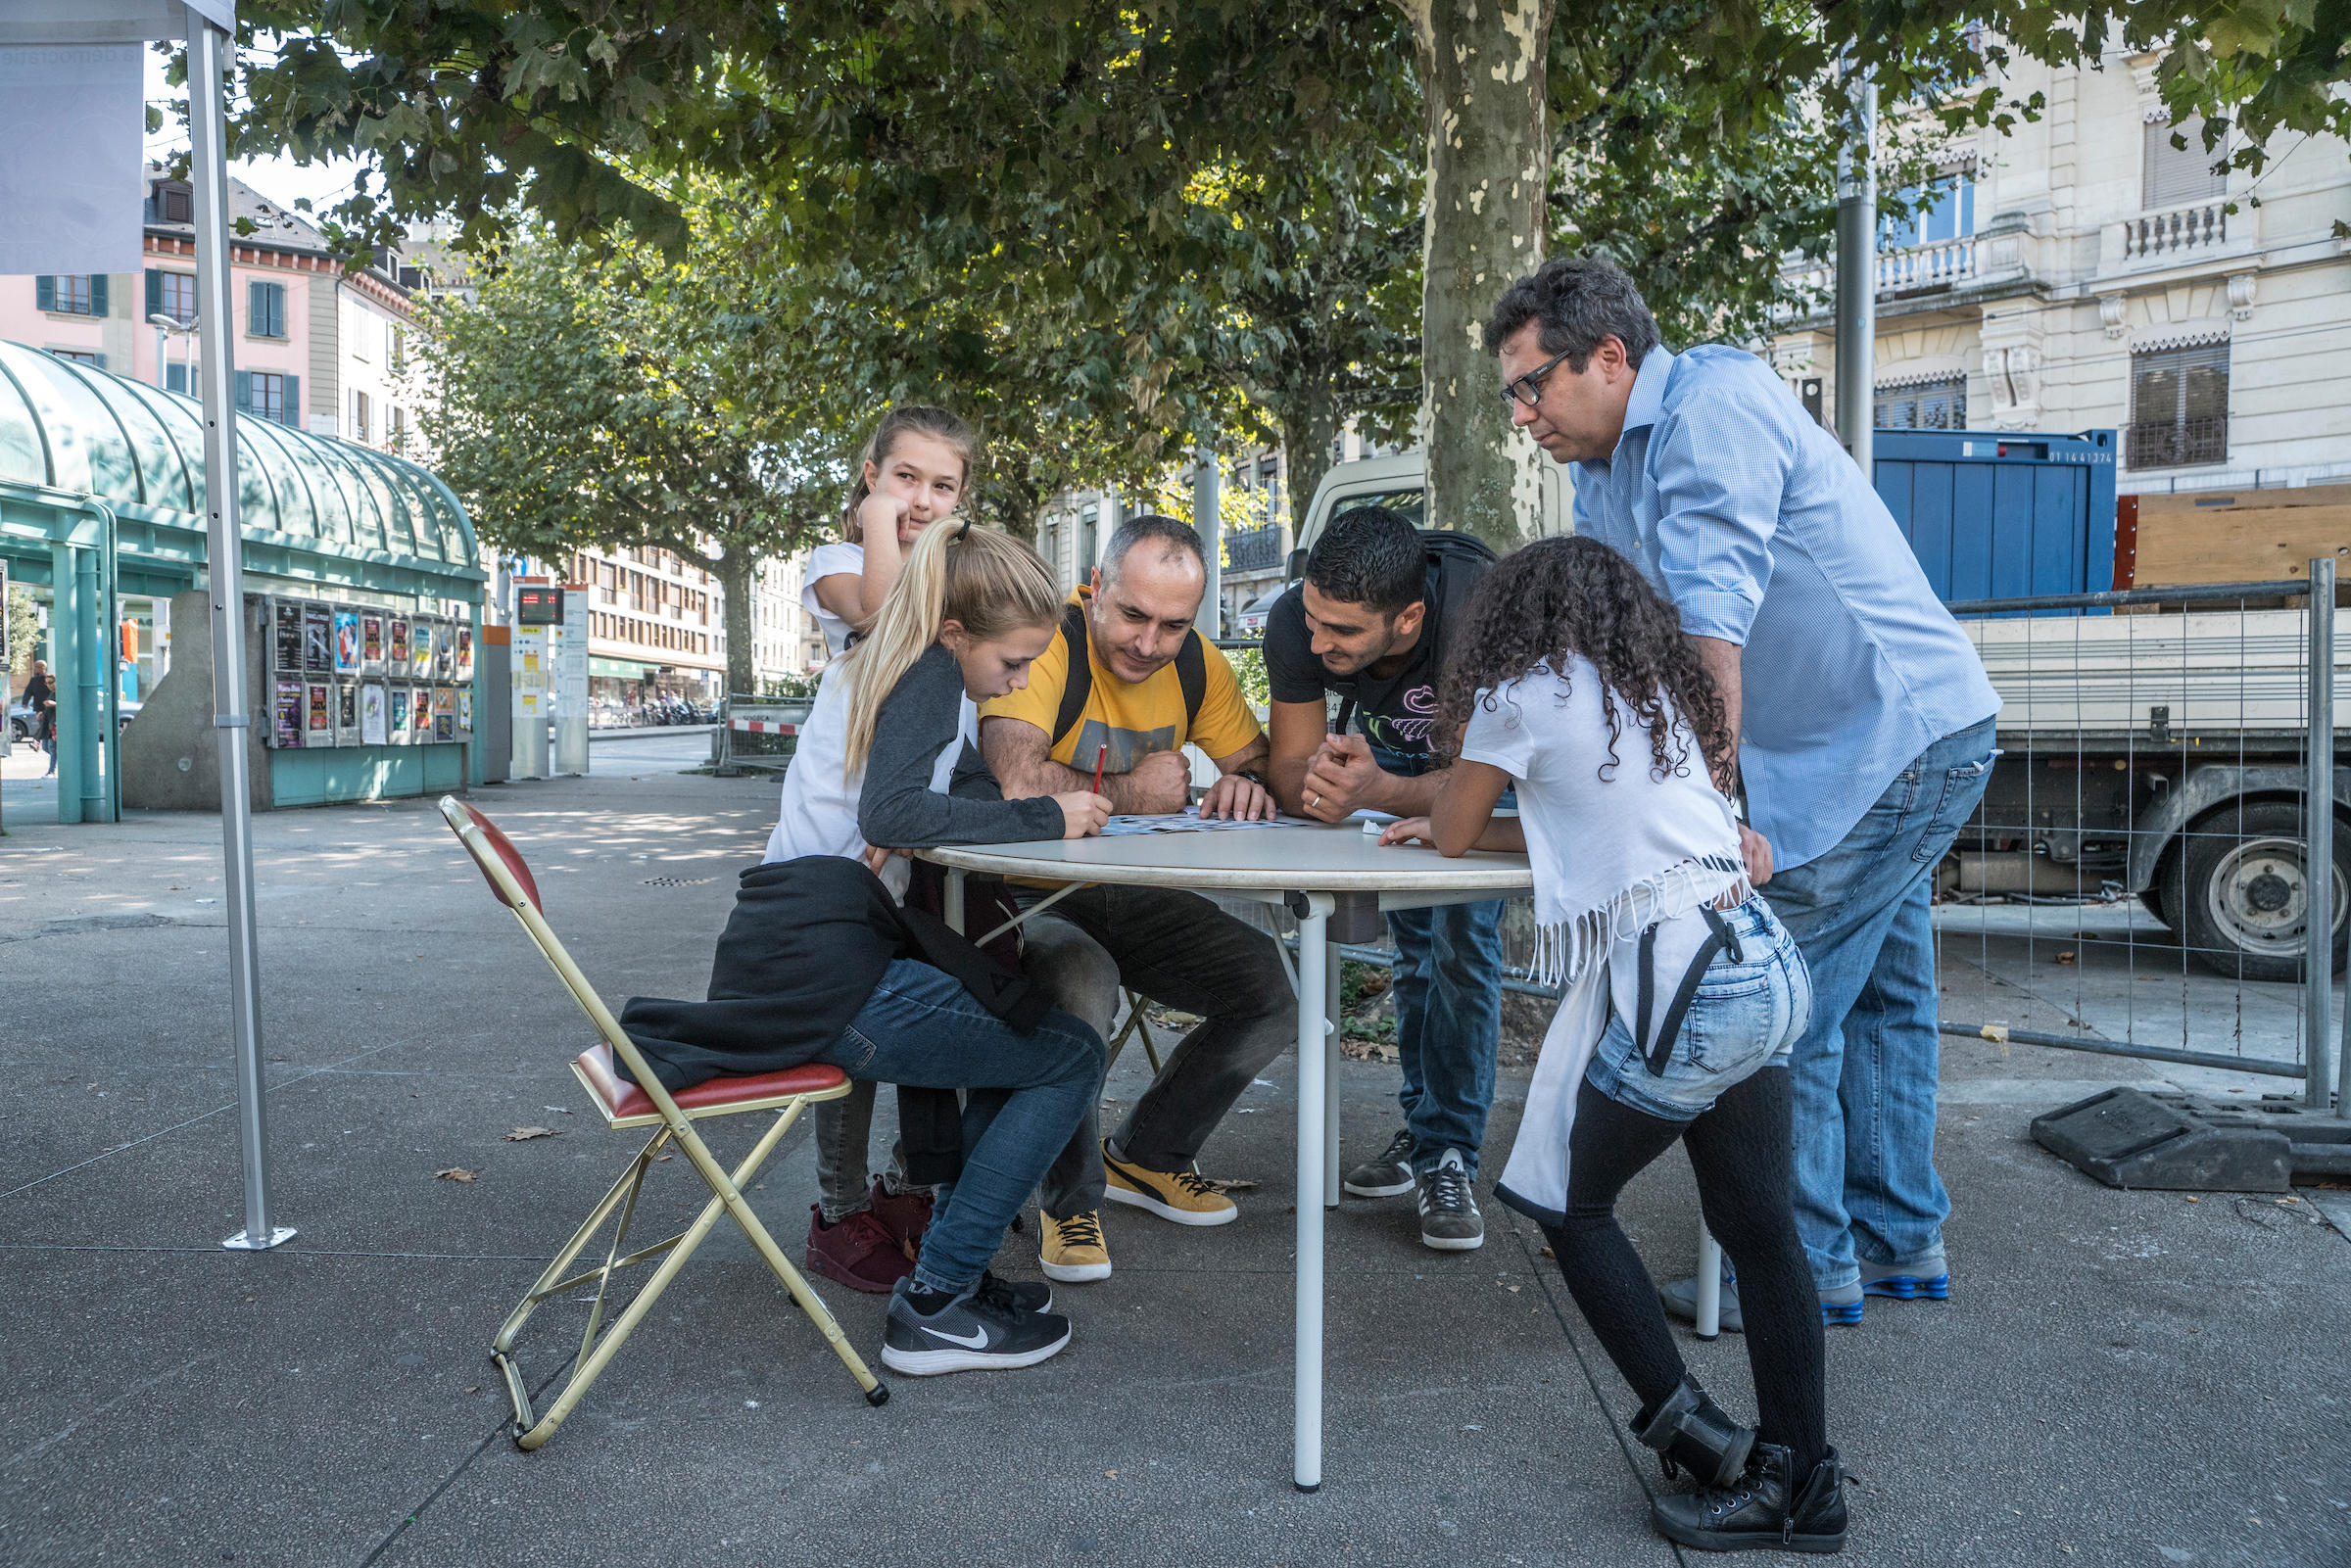 فريق من ستة أشخاص يتحلق ما بين جالس وواقف حول طاولة في أحد شوارع جنيف